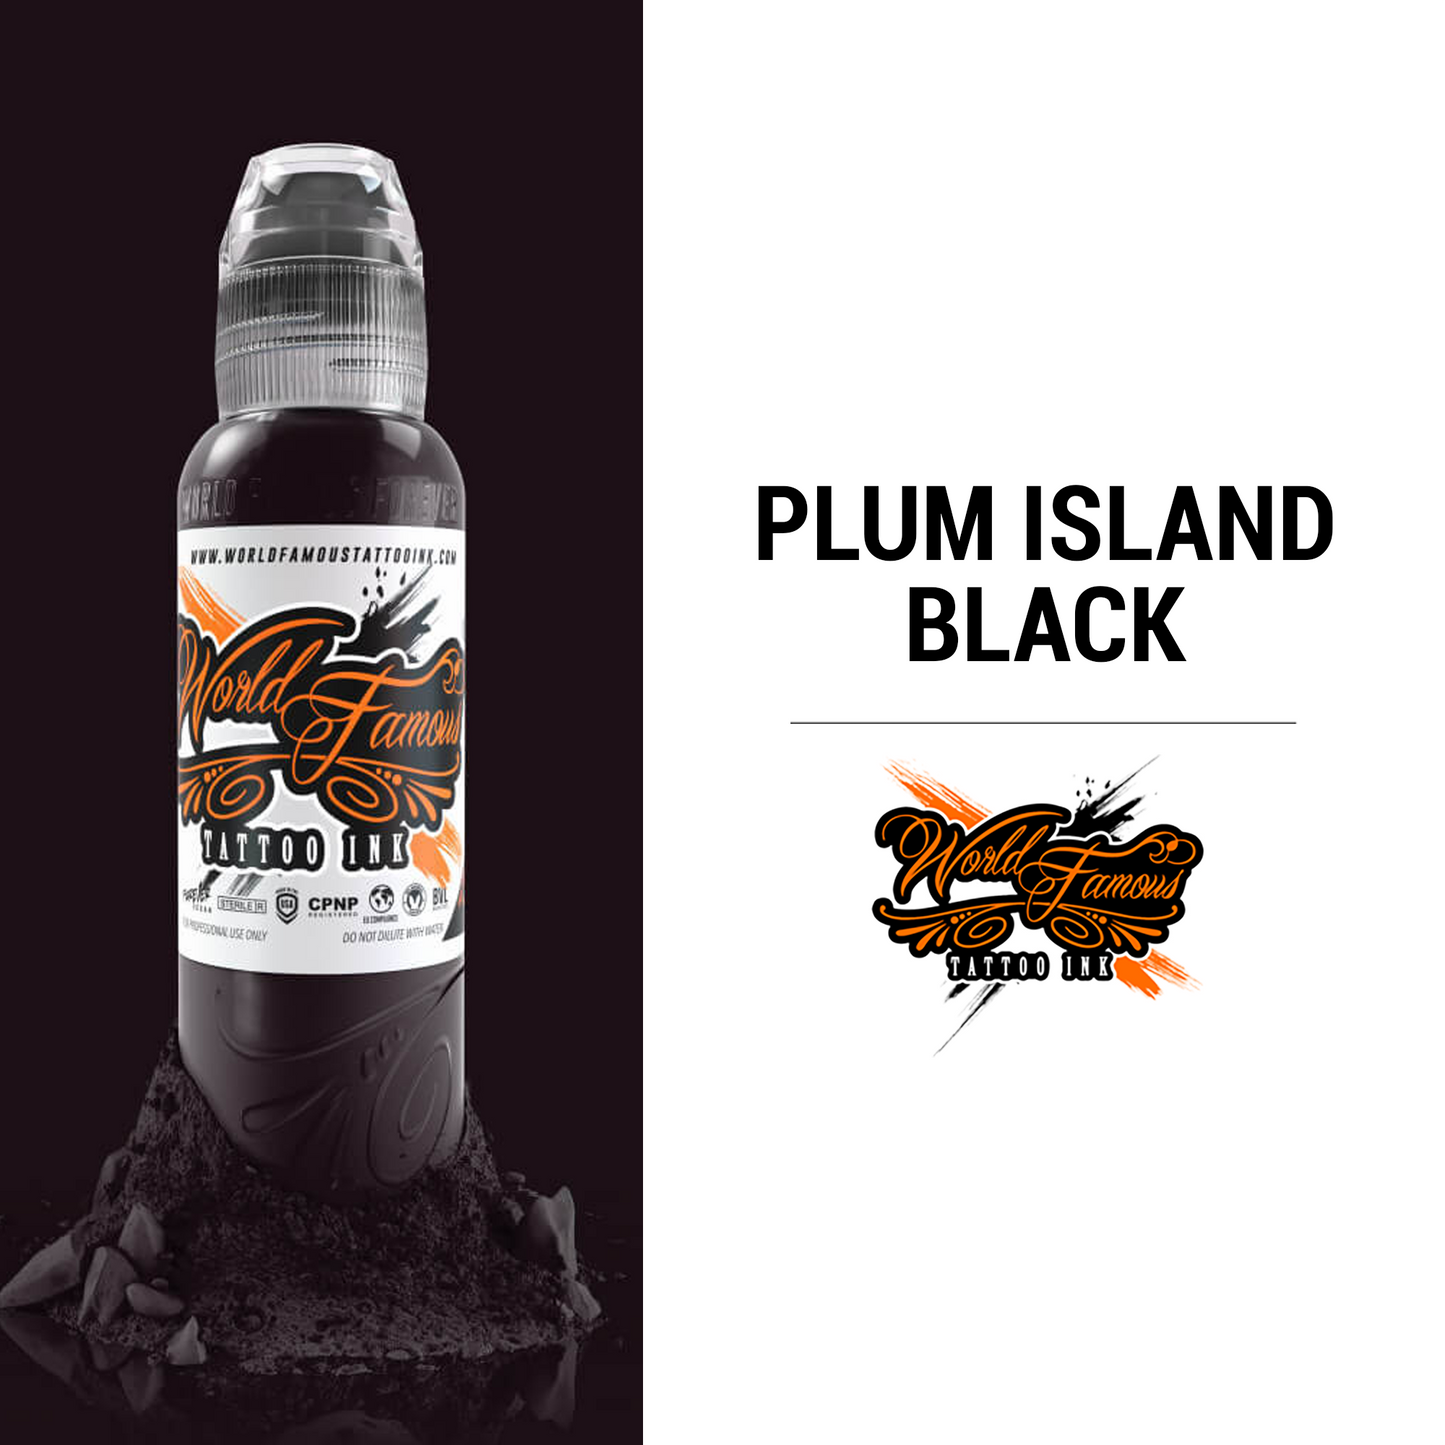 Plumb Island Black - 1oz | World Famous Tattoo Ink